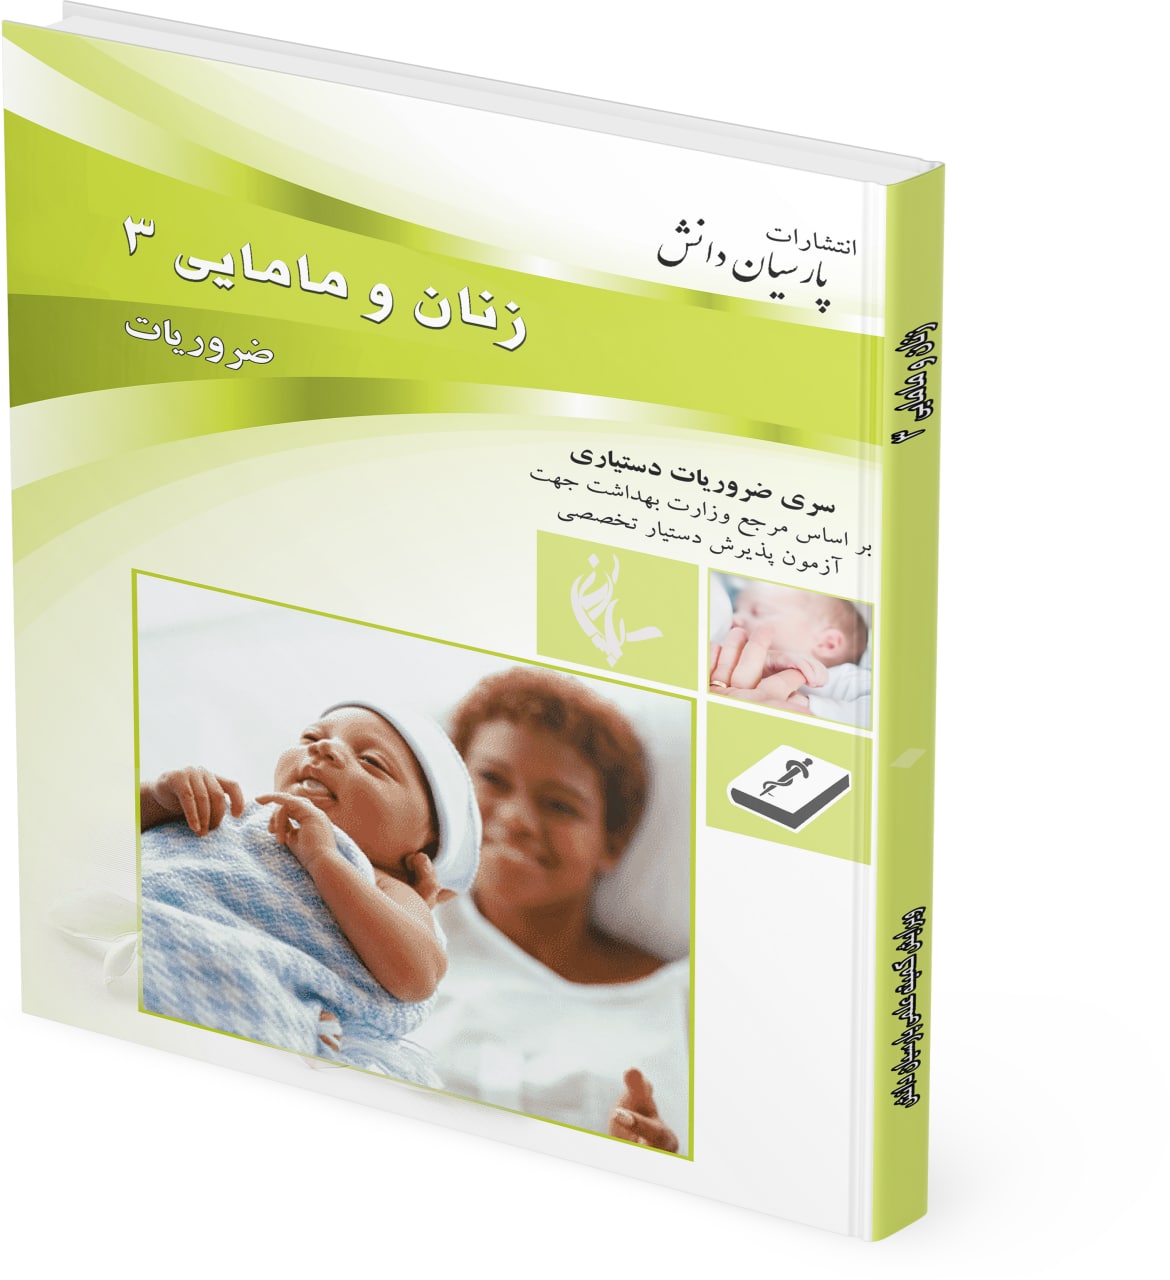 طراحی جلد کتاب ضروریات زنان پارسیان دانش